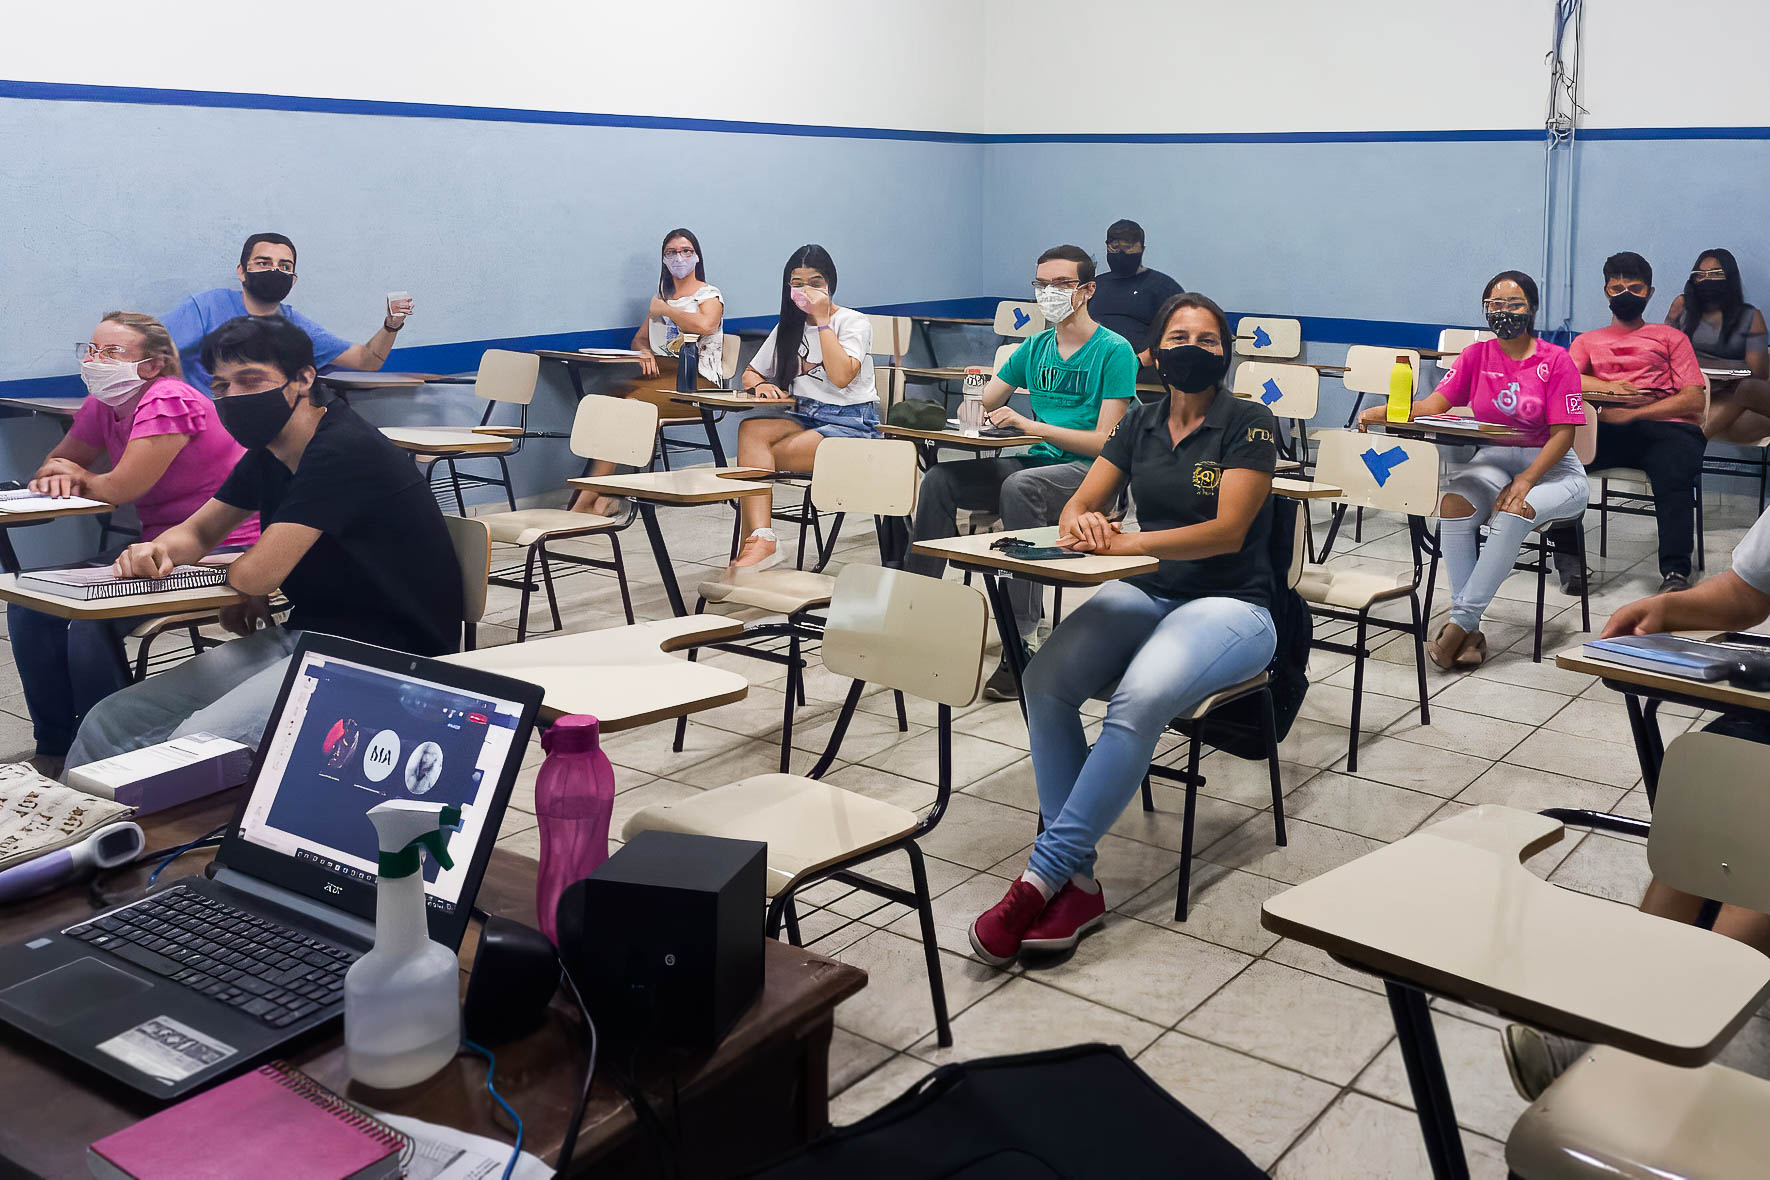 Alunos do curso técnico em Recursos Humanos. Foto: Divulgação / ETEC Classe Descentralizada de Urupês